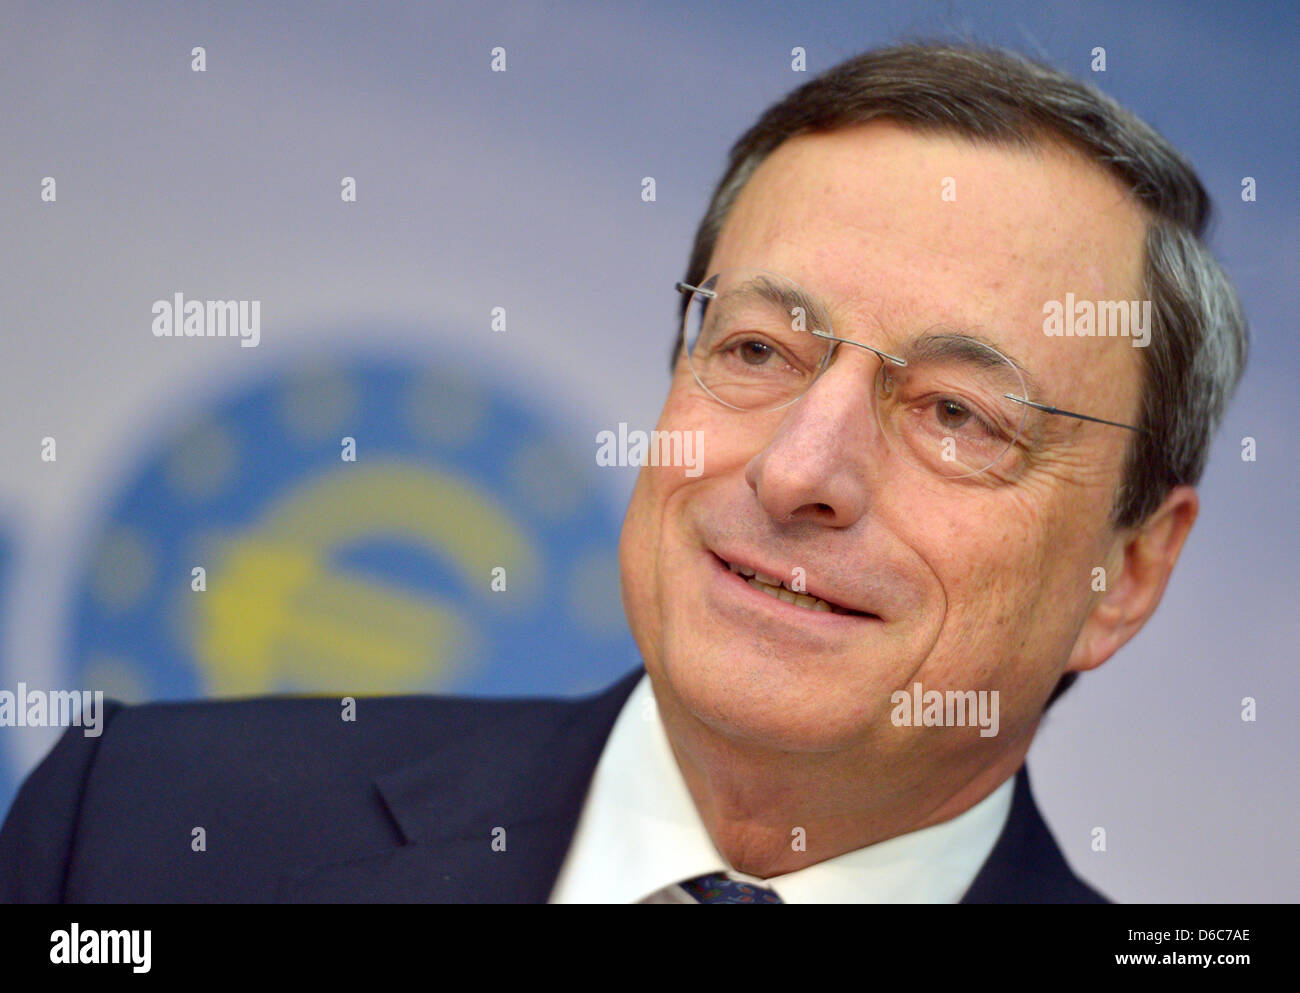 Präsident der Europäischen Zentralbank Mario Draghi spricht auf einer Pressekonferenz über die Geldpolitik der EZB in Frankfurt Am Main, Deutschland, 6. September 2012. Foto: BORIS ROESSLER Stockfoto